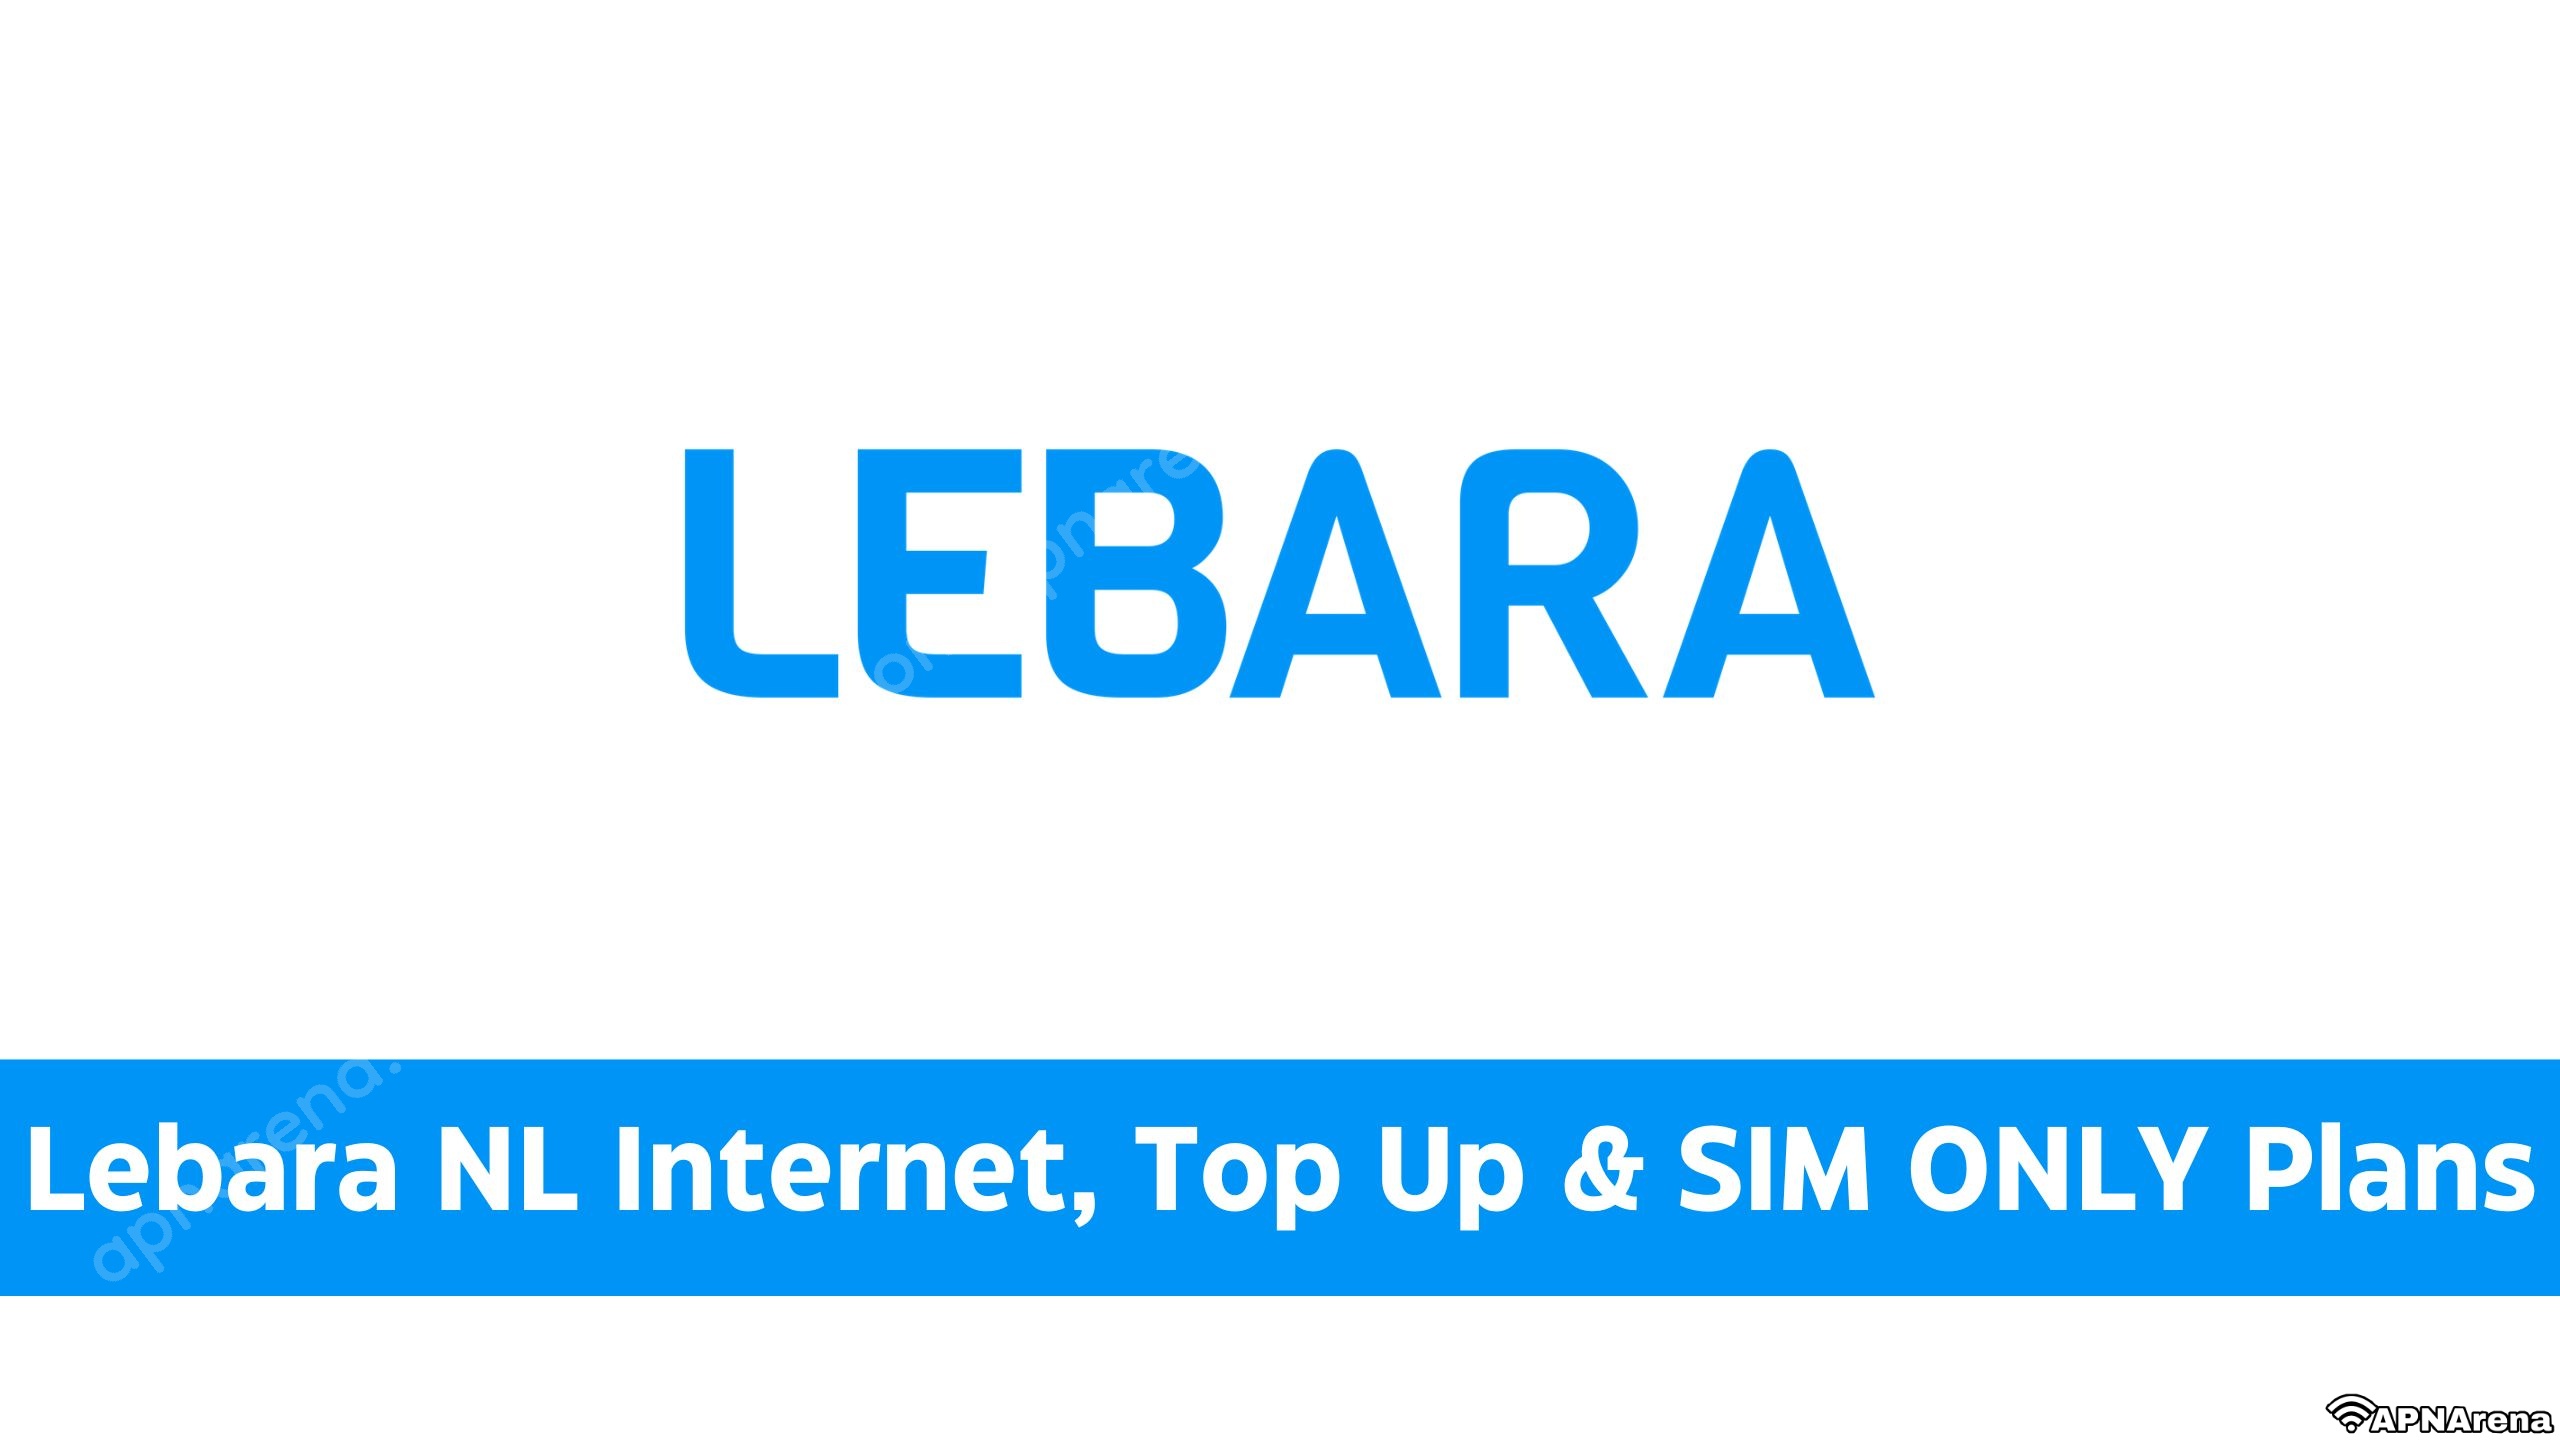 Plans Up Other NL SIM & Beltegoed, | & Lebara Bundles Internet, Data Opwaarderen, Top ONLY